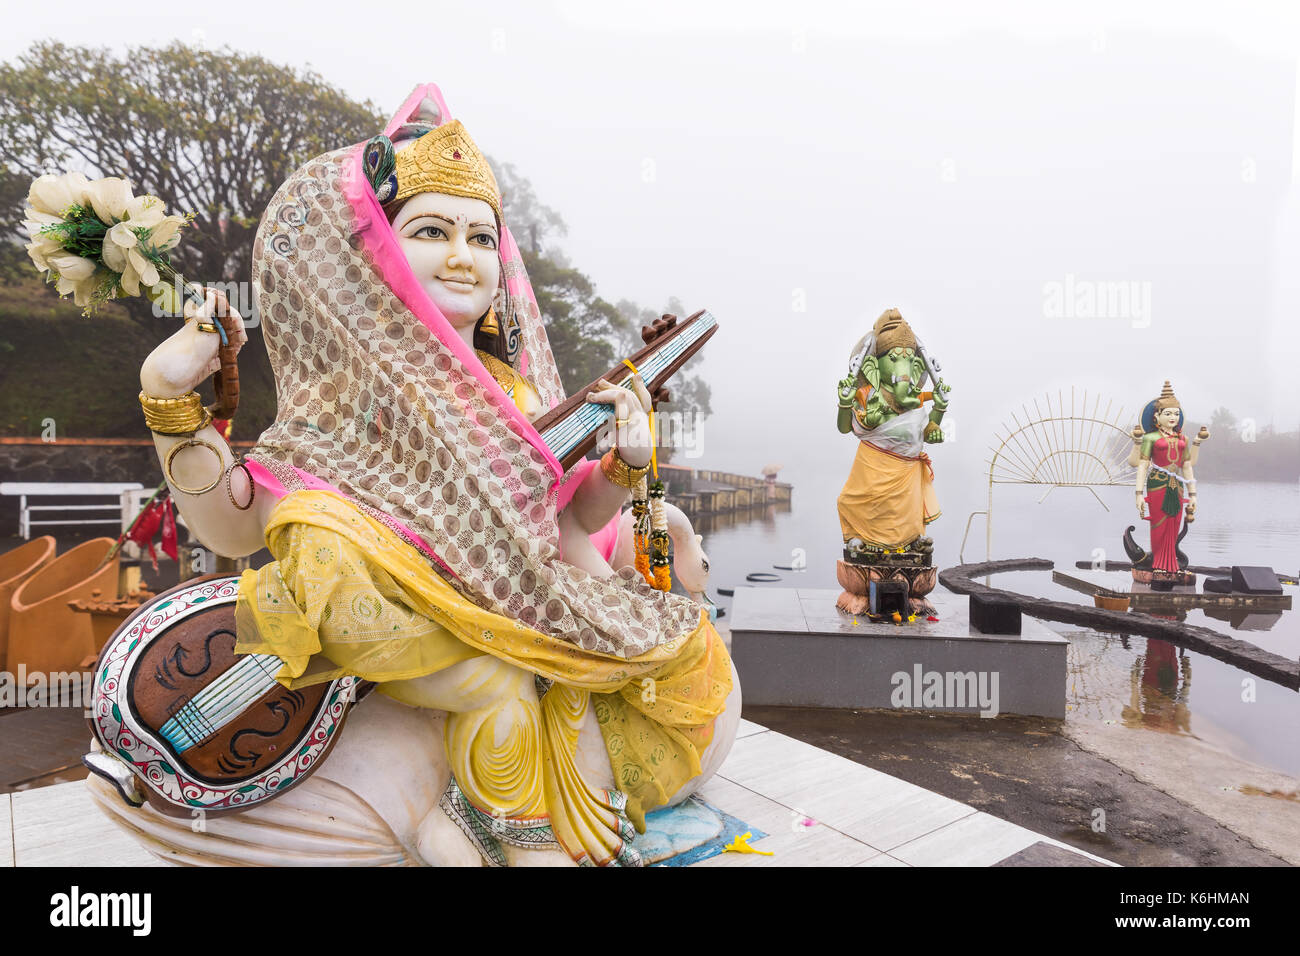 Hindu staues in einem Tempel (Grand Bassin), in den Tag mit Nebel, erstellen Sie mystische Atmosphäre. Mauritius Stockfoto